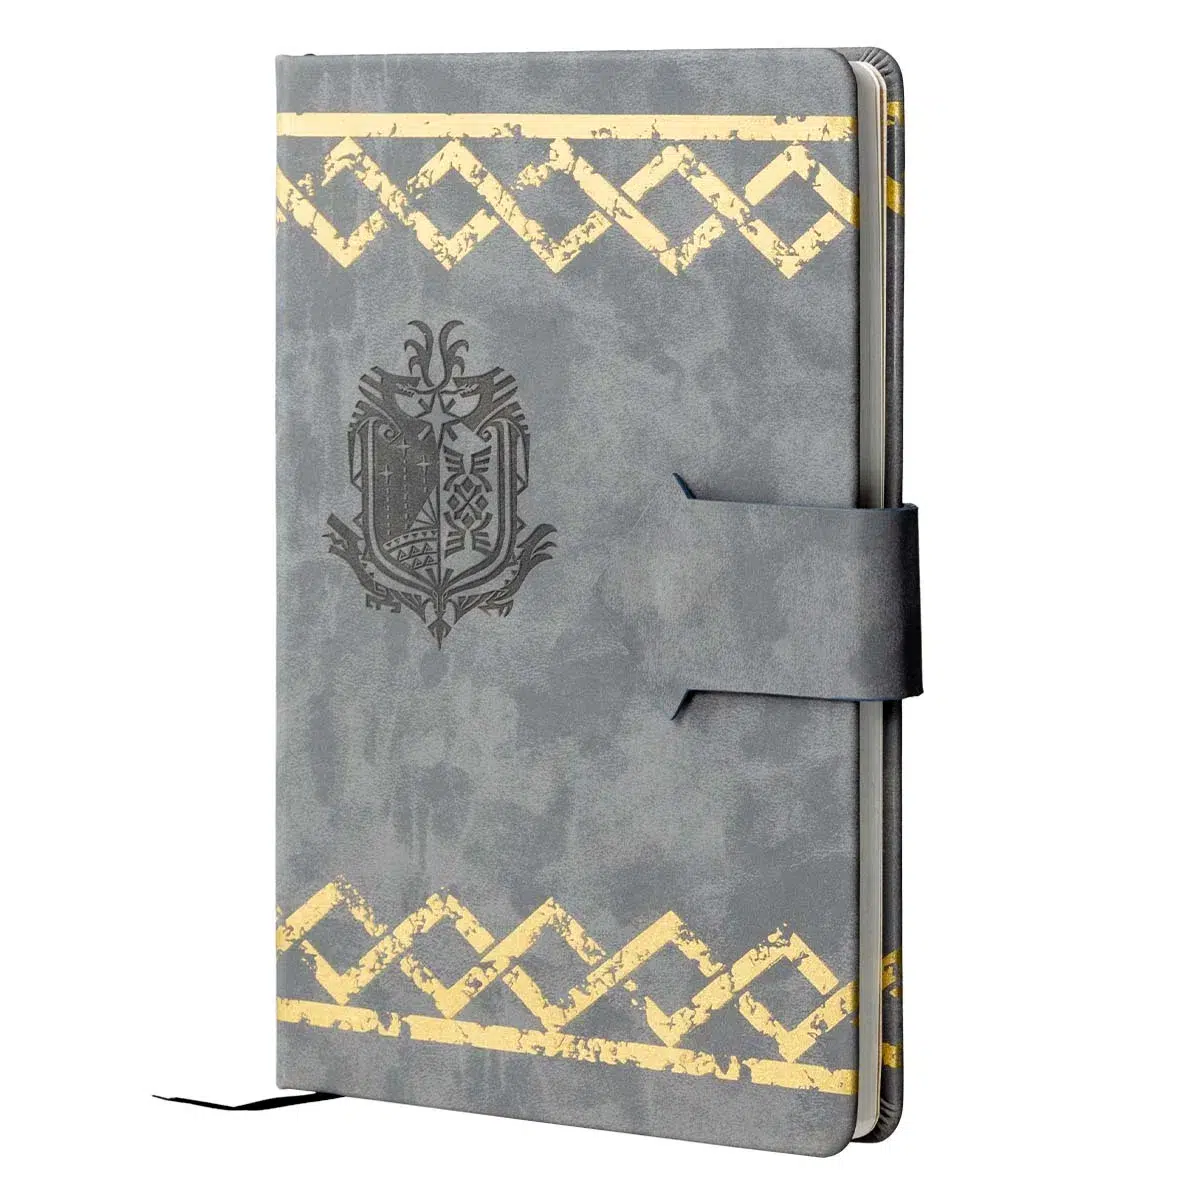 Monster Hunter Notebook "Handler" Cover